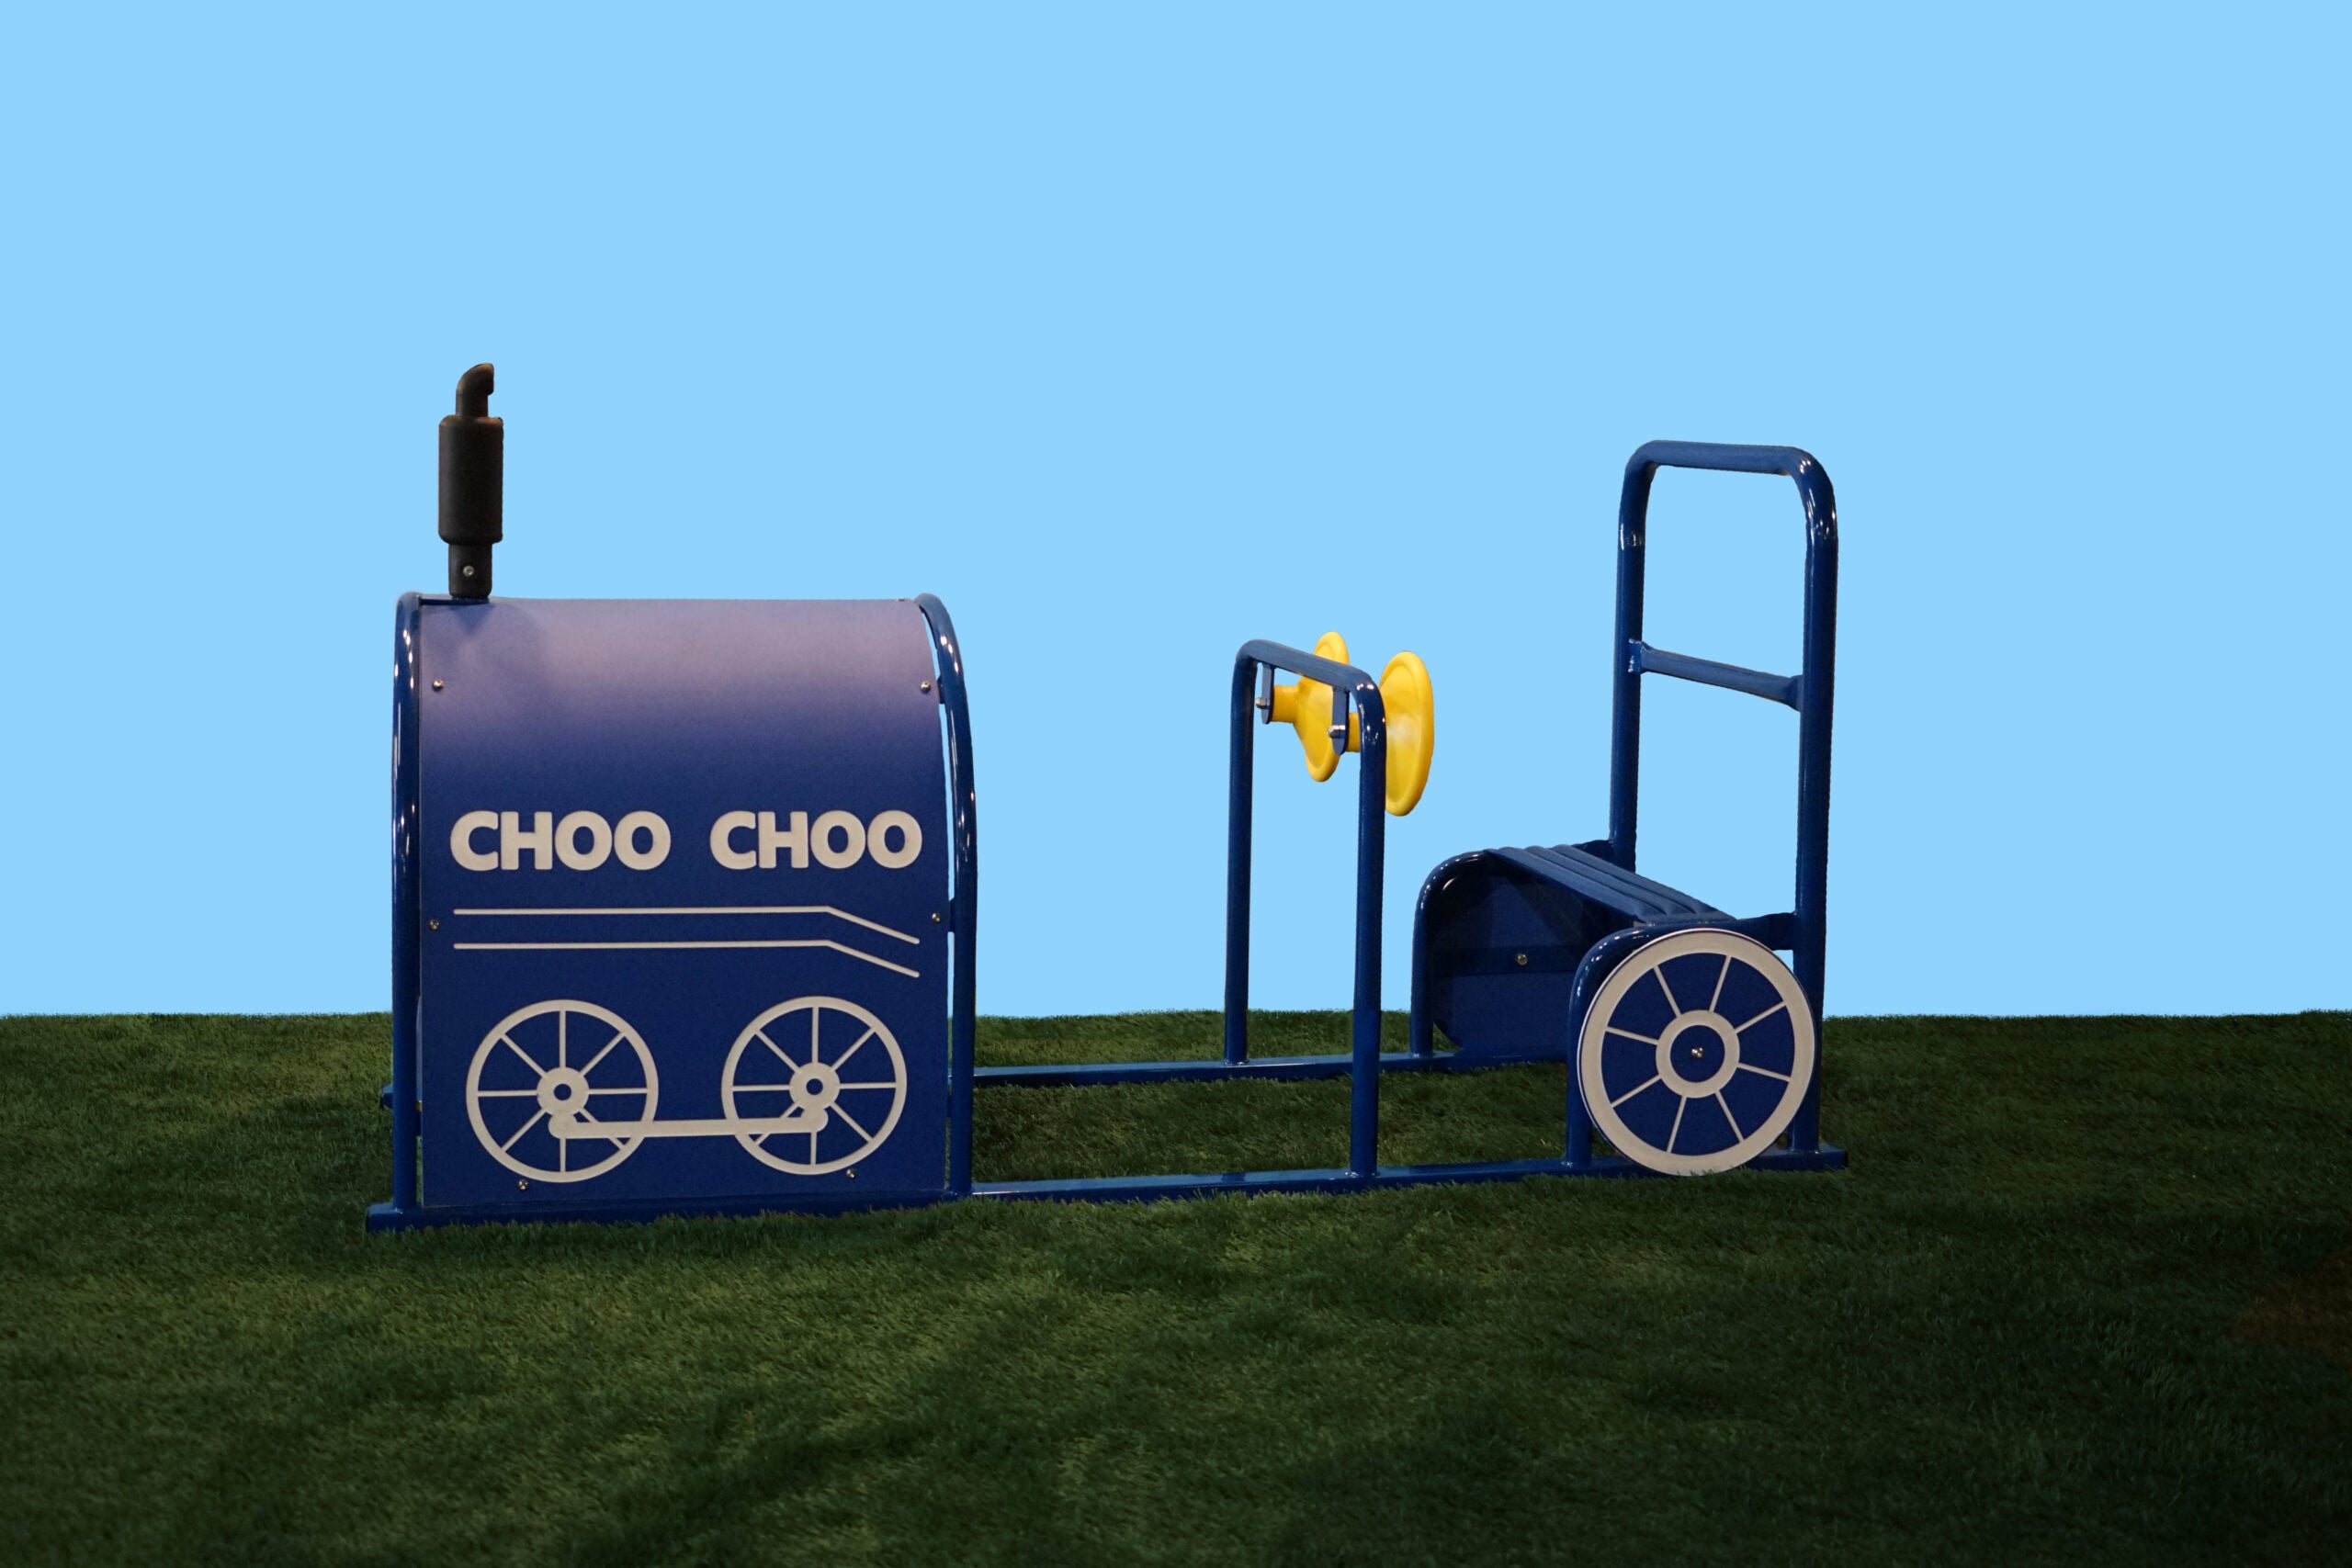 Choo Choo Train Engine With Crawl Tube